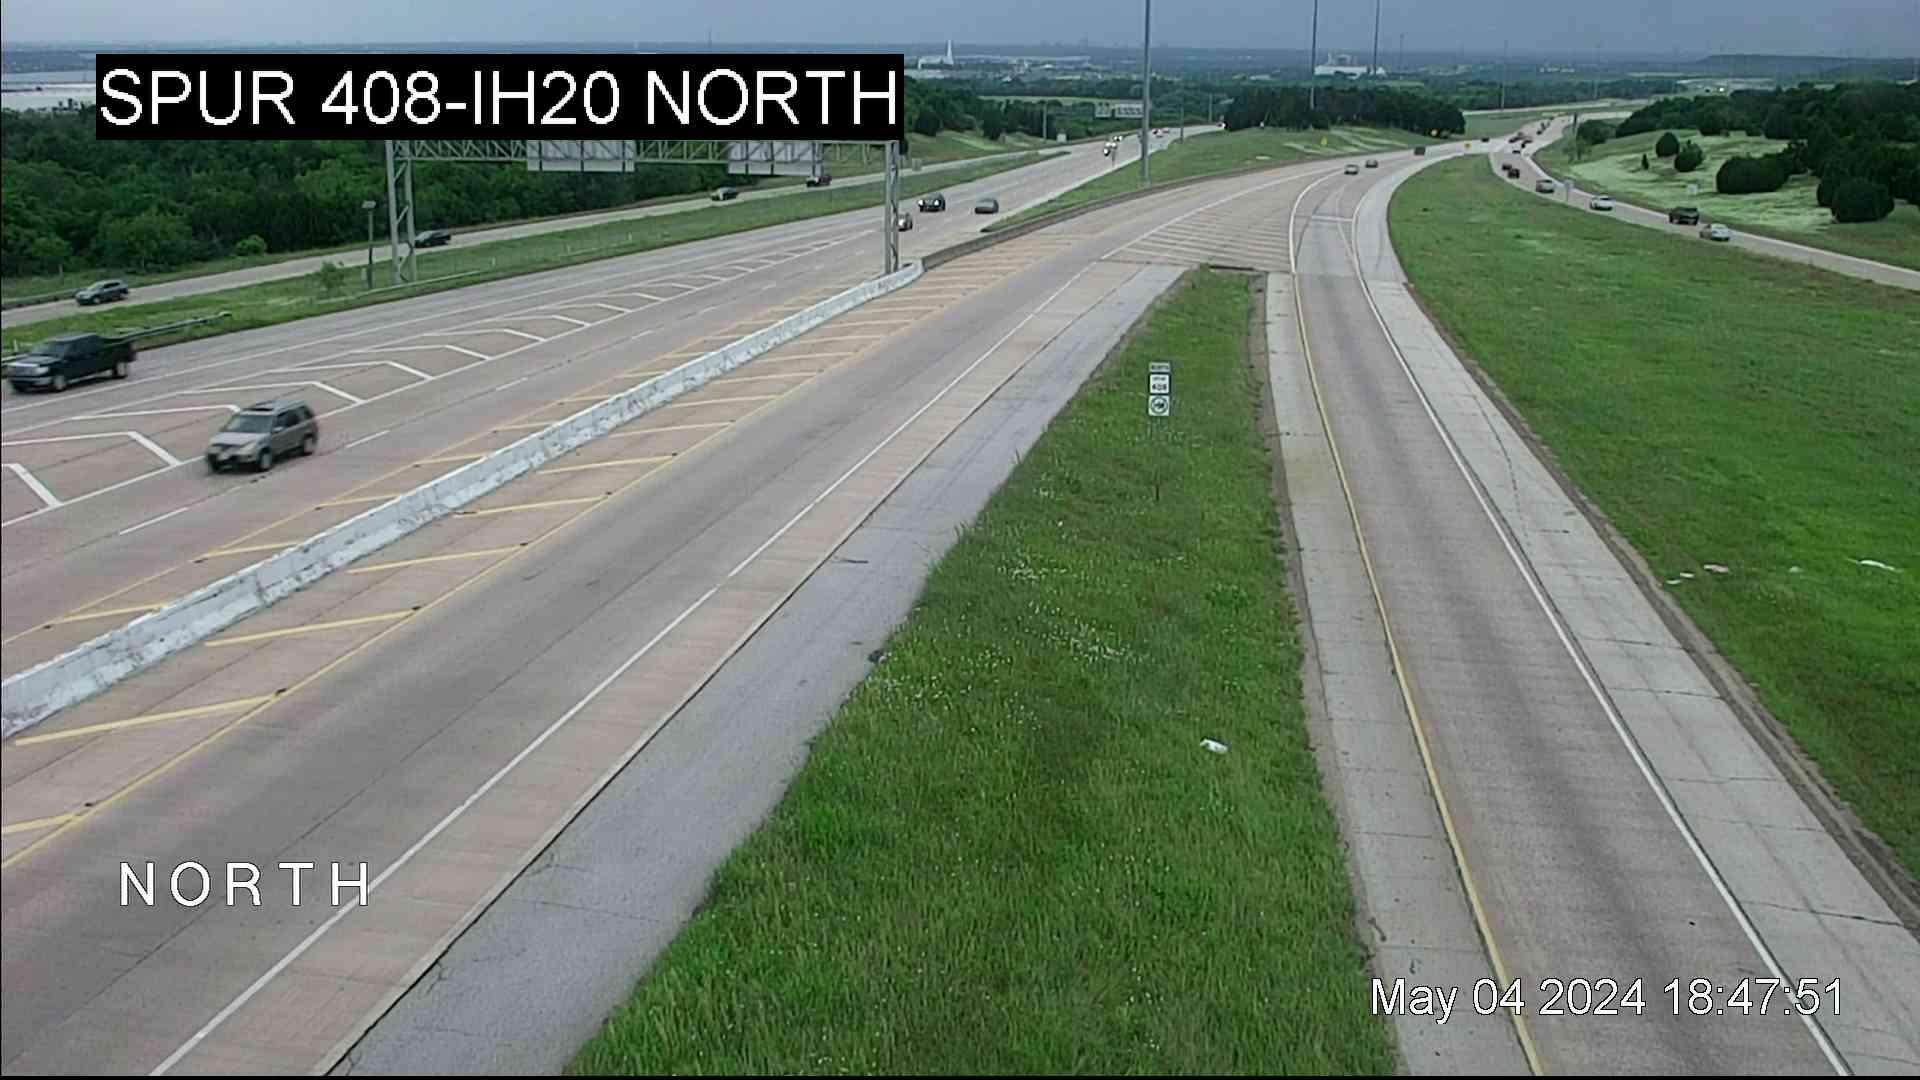 Dallas › North: Spur 408 @ I-20 North Traffic Camera